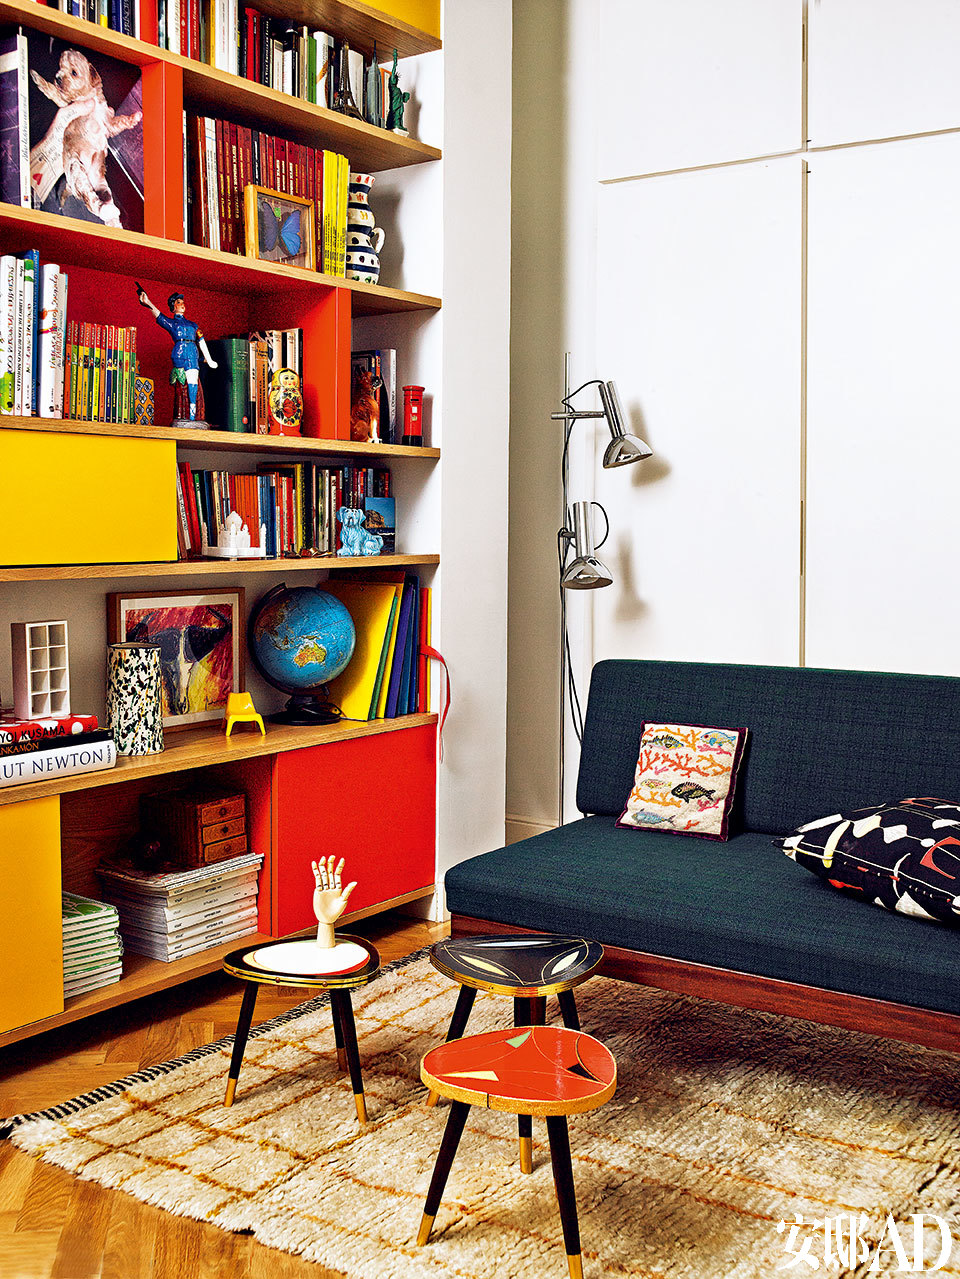 彩色福米加塑料贴面的柜子，灵感来自Charlotte Perriand的设计。上世纪60年代的丹麦沙发购自El Transformista，沙发上的靠垫是Julia Martínez为Petit Point设计的。Jan Kath的地毯上摆着几个来自La Recova的小桌子。